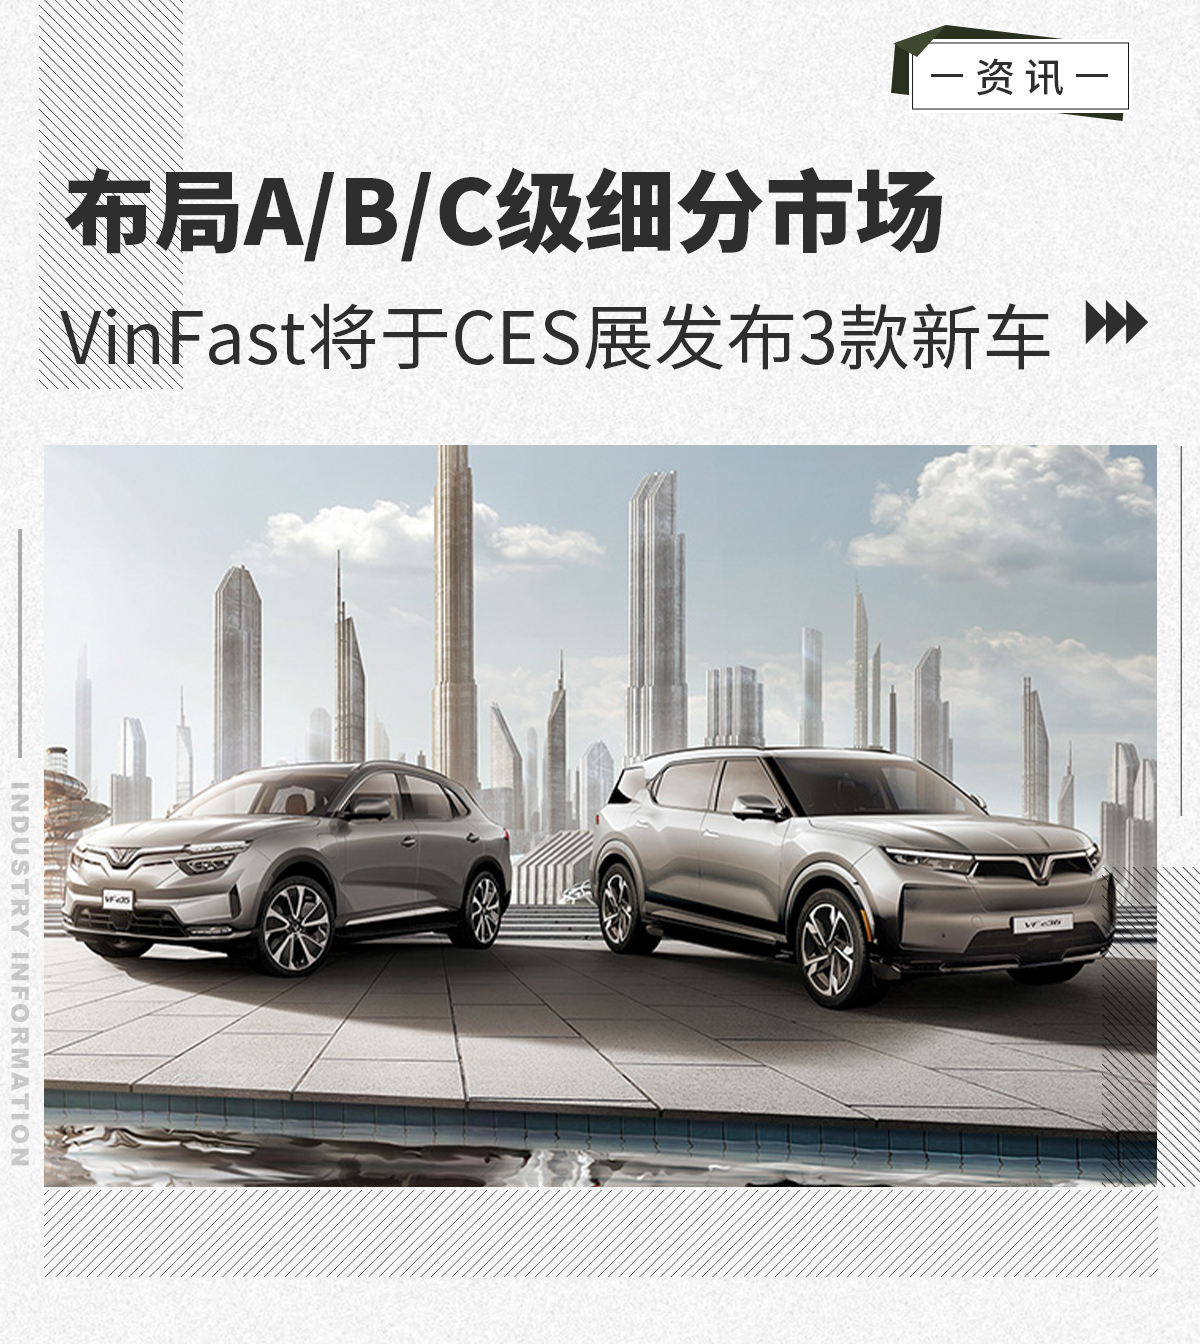 搭高级驾驶辅助系统 VinFast将CES展发布3款新车